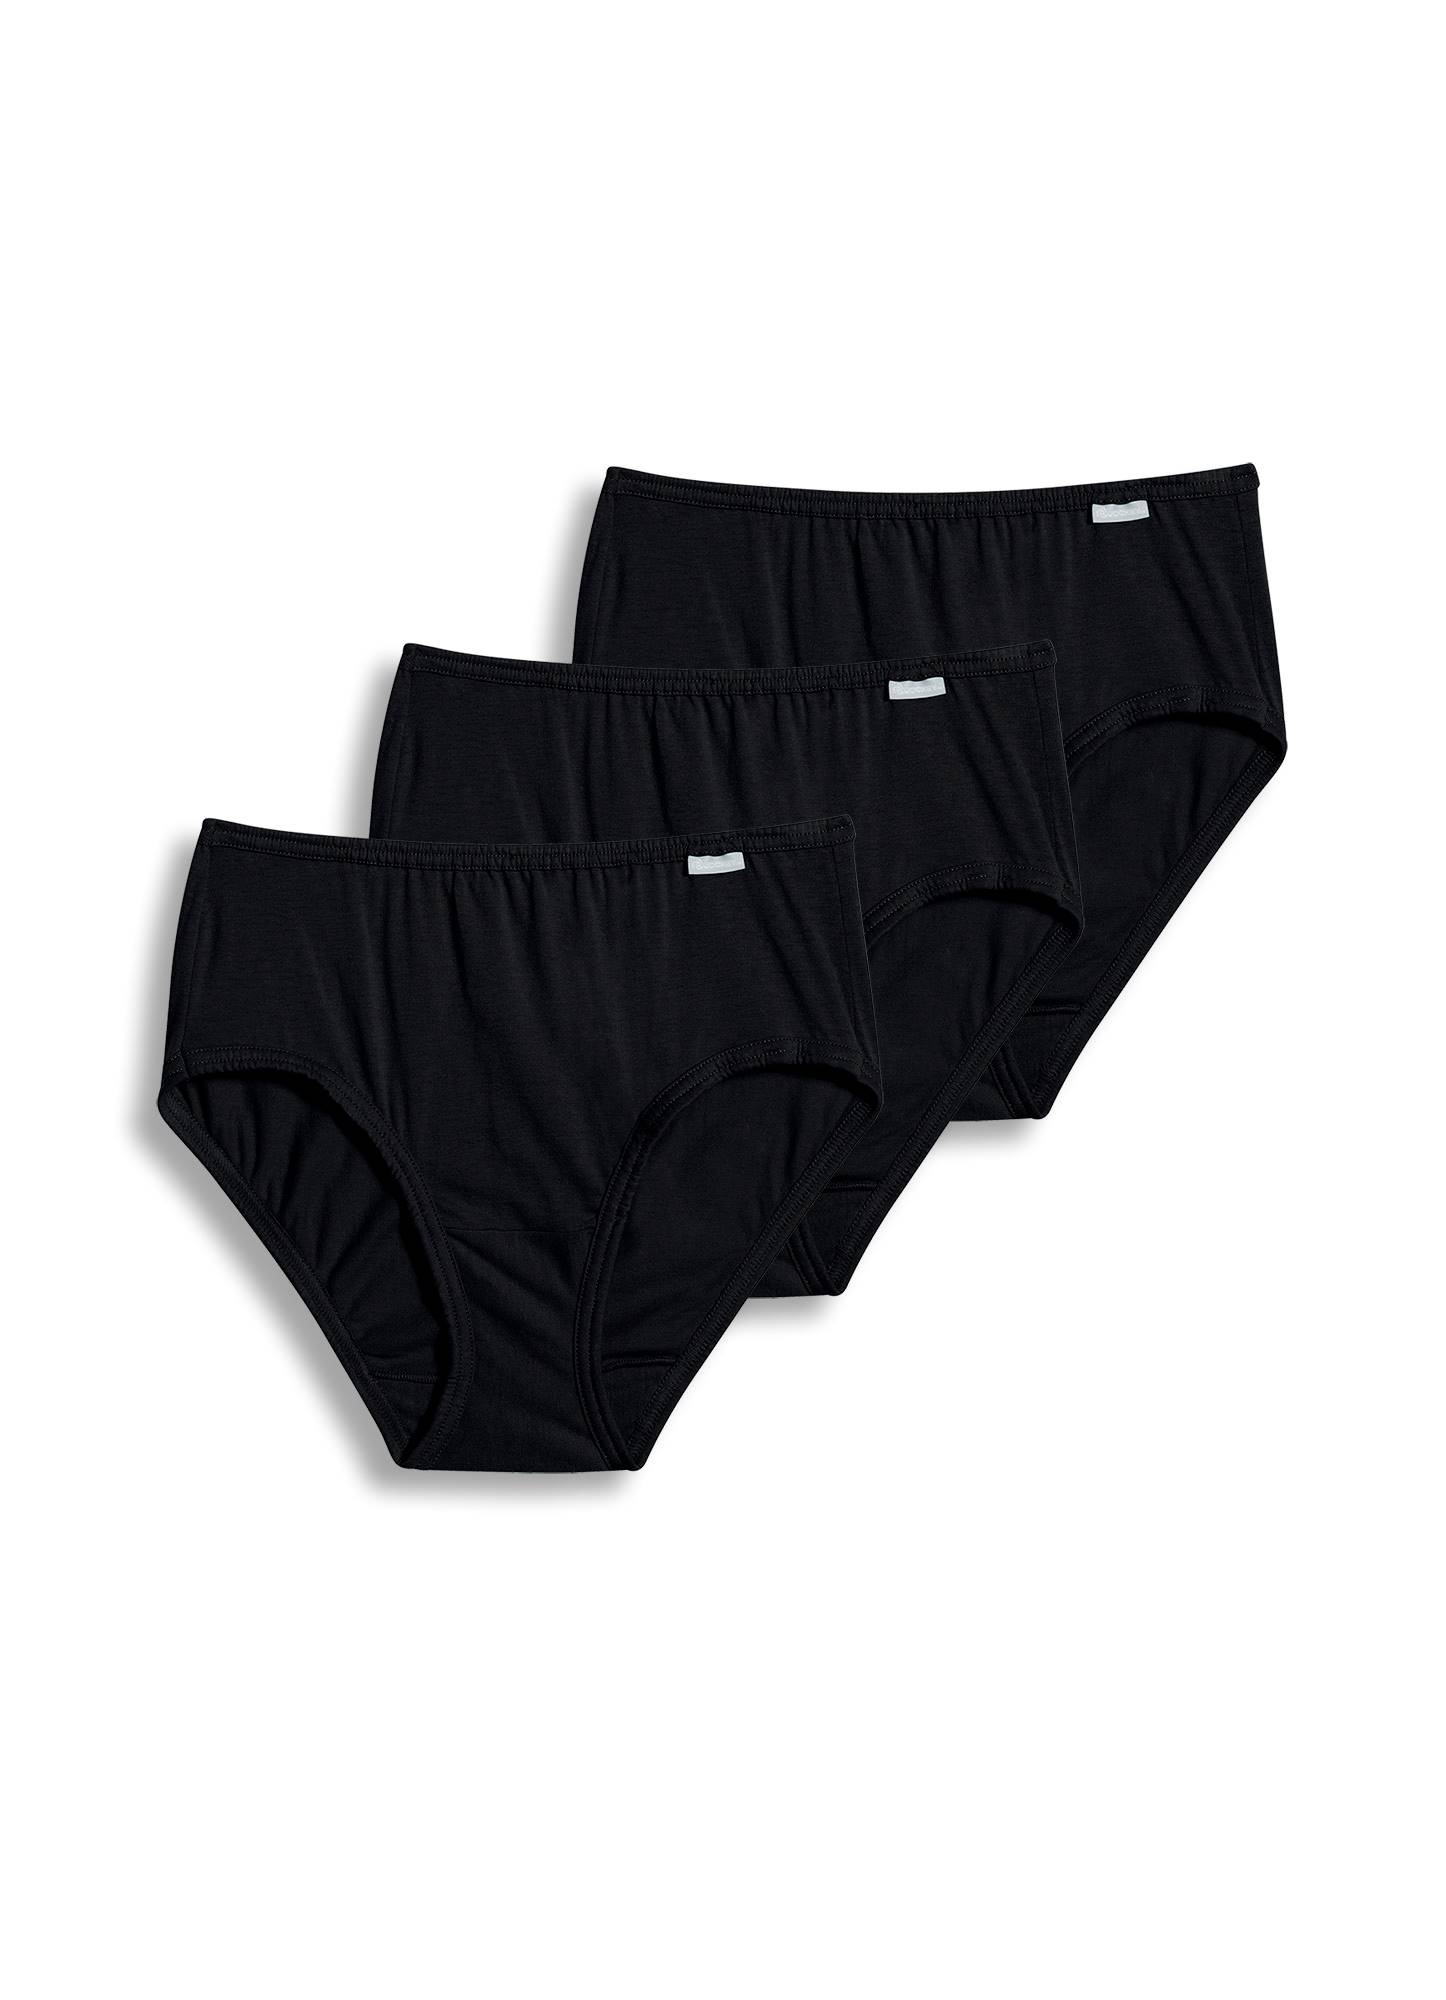 Jockey Women's Underwear Elance Hipster - 6 Pack, Grey Heather